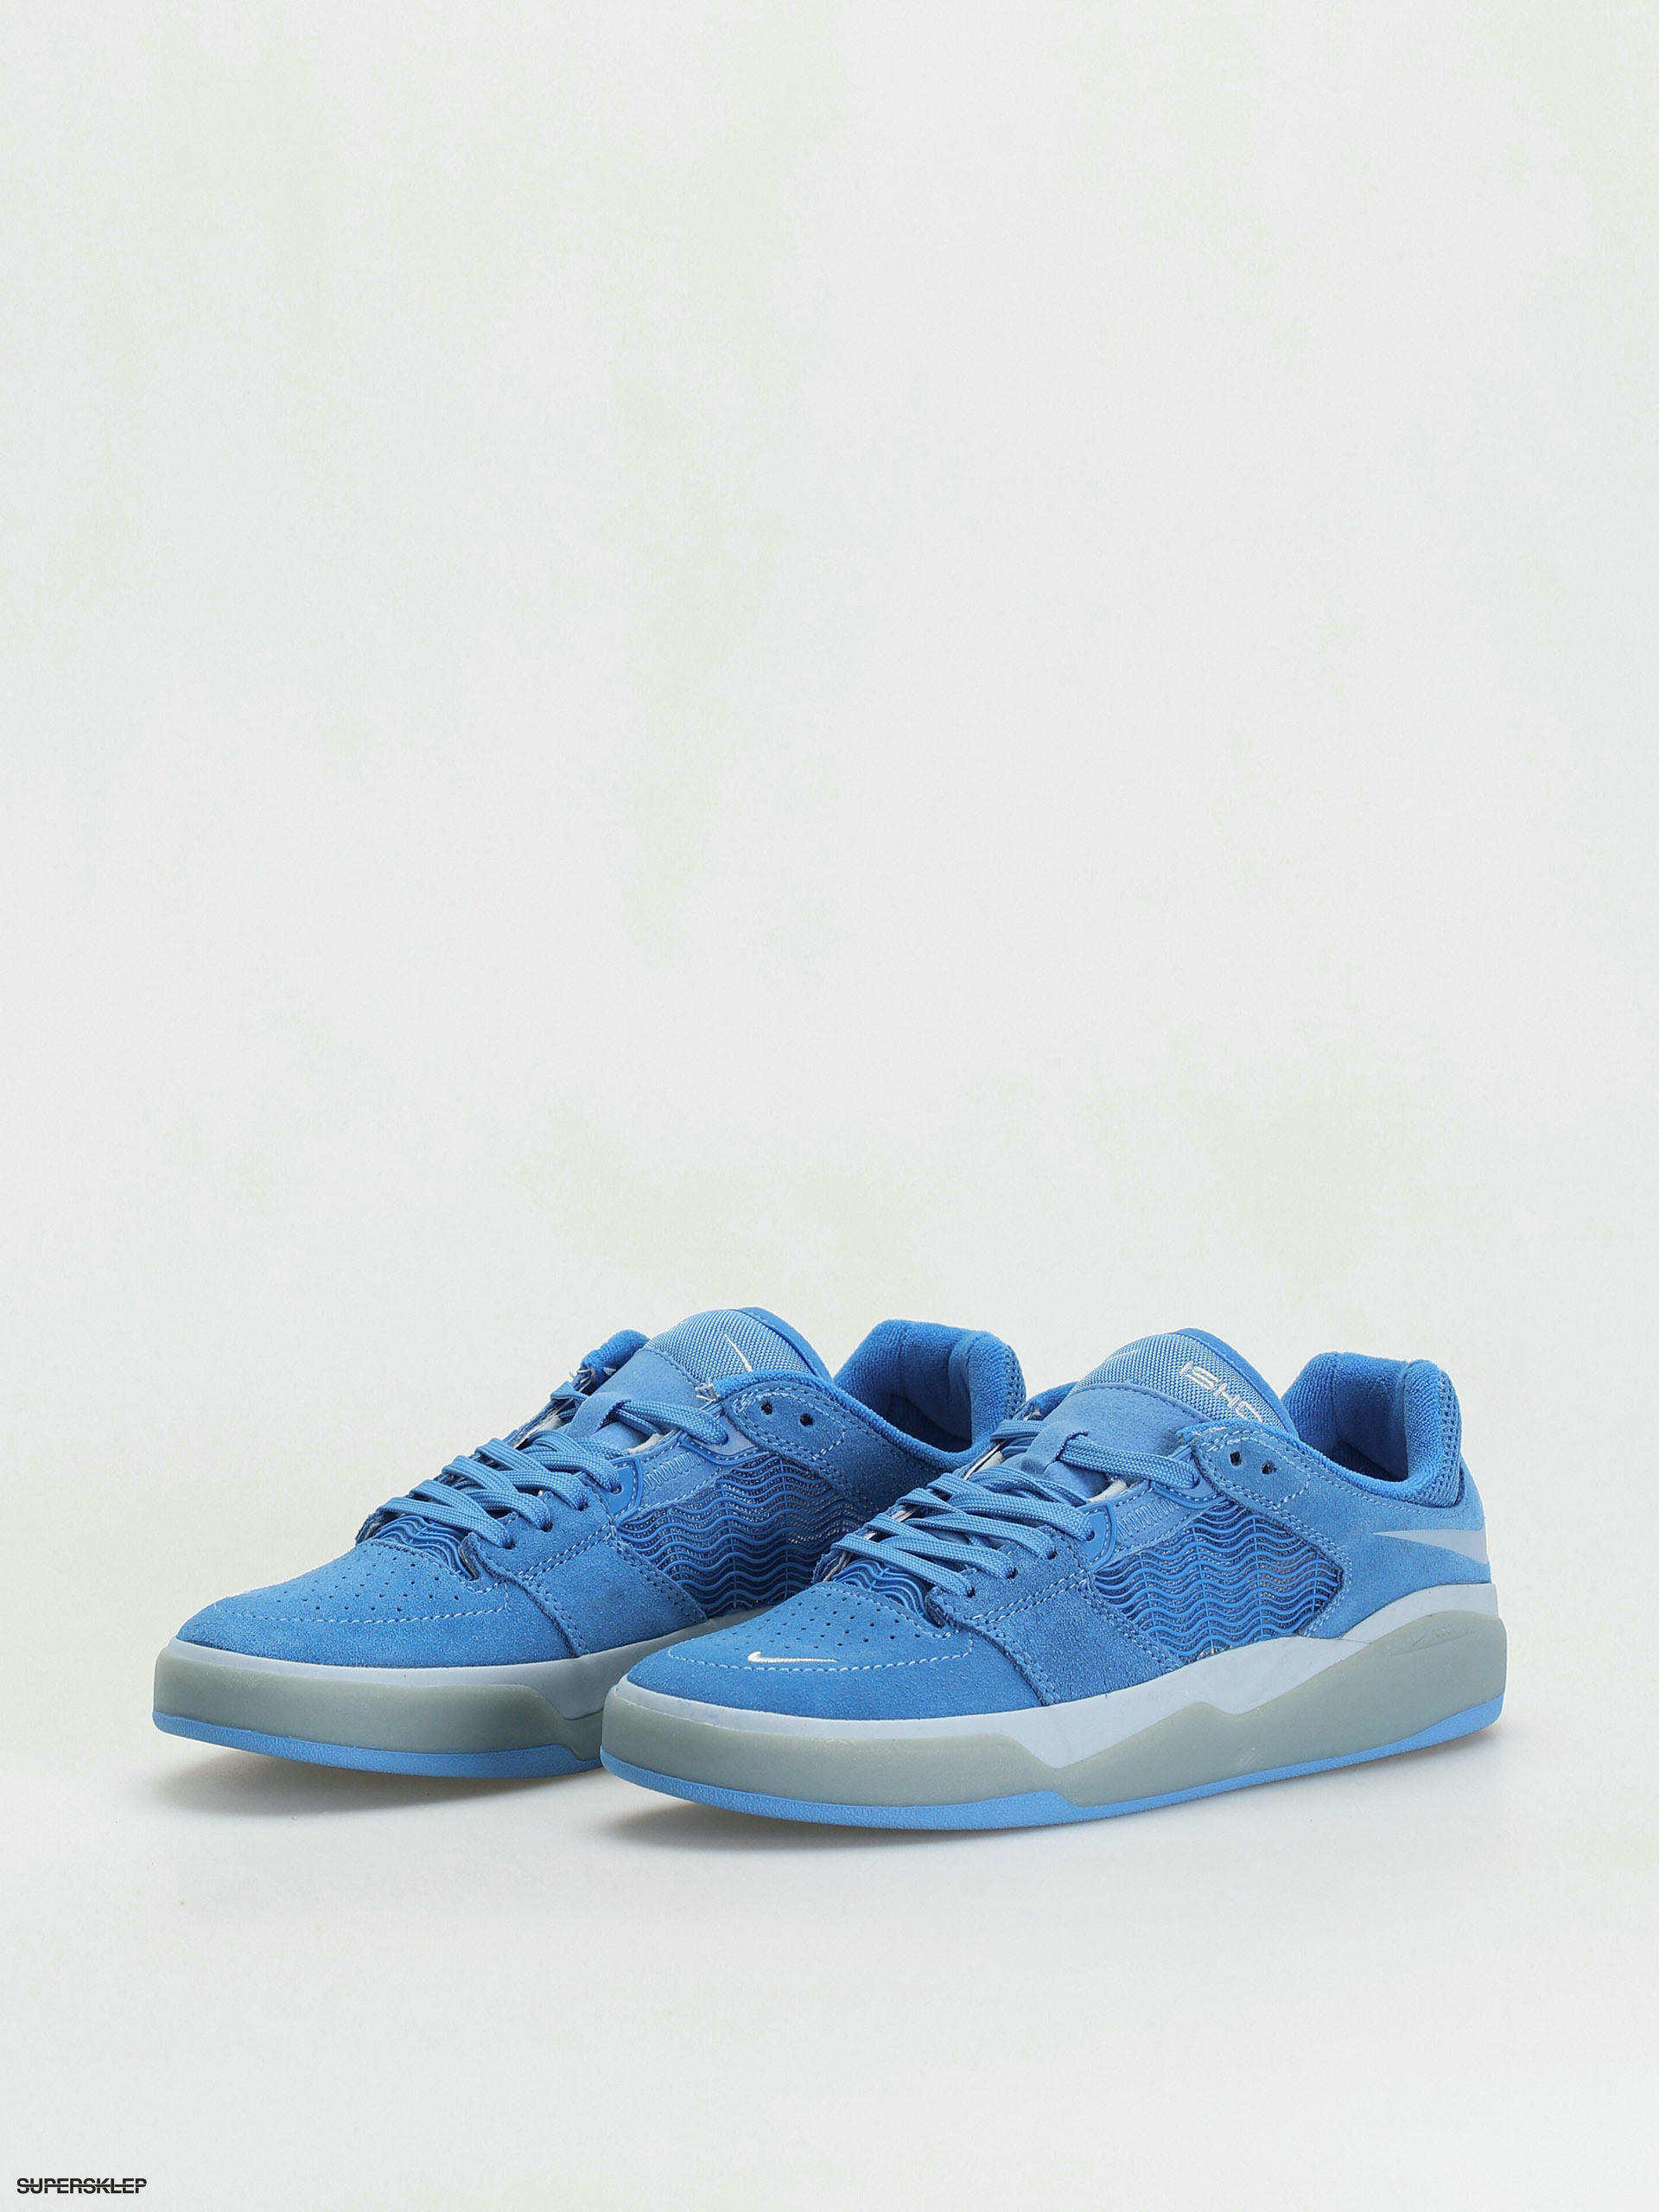 Nike SB Ishod Wair Pacific Blue - Original São Paulo